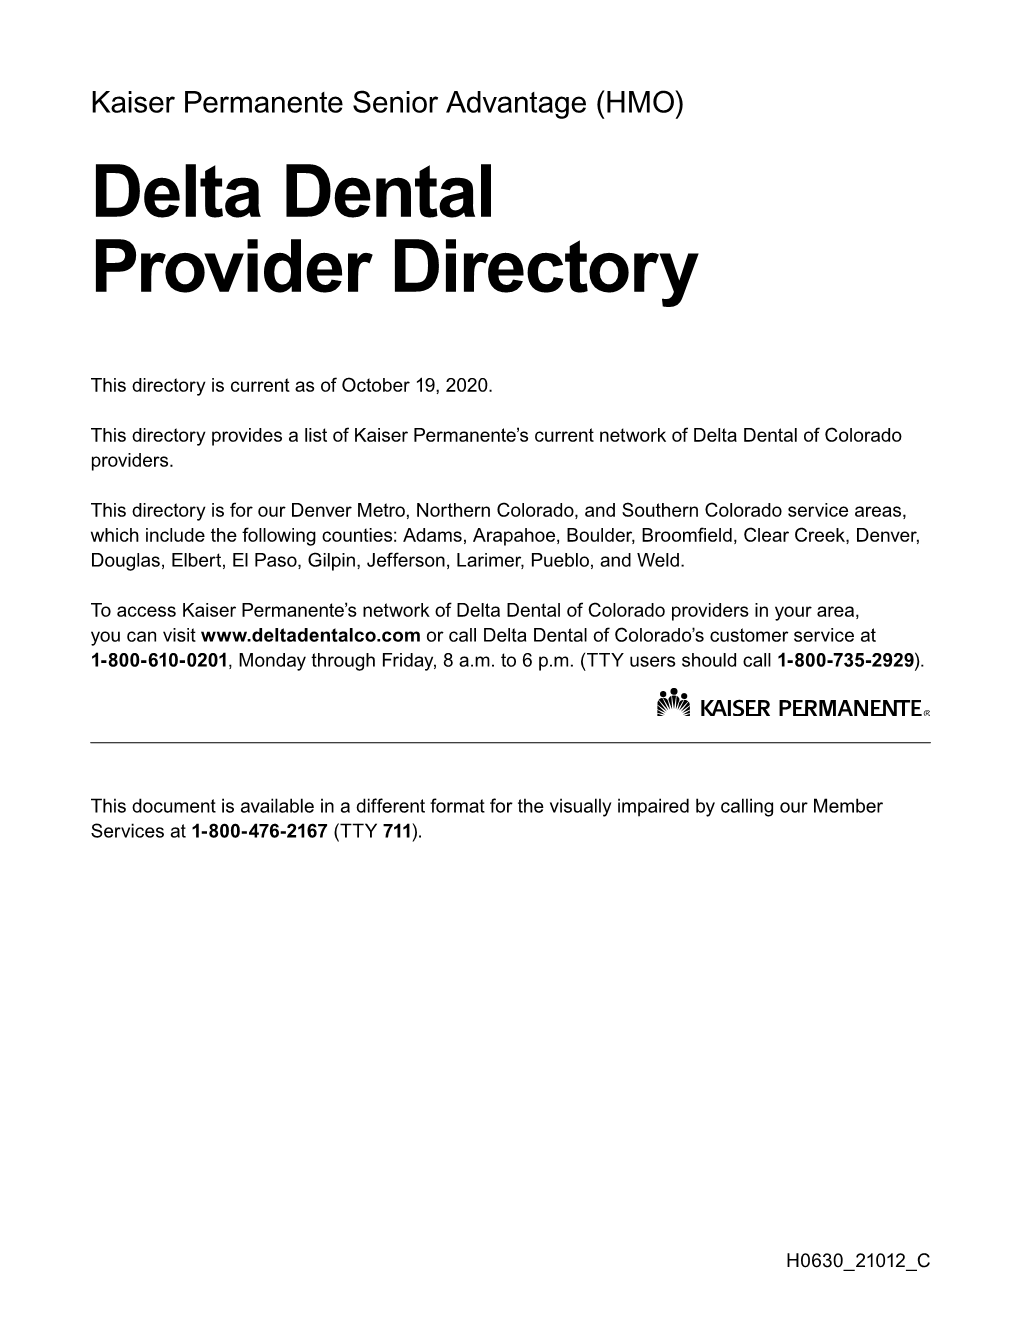 2021 Delta Dental Directory